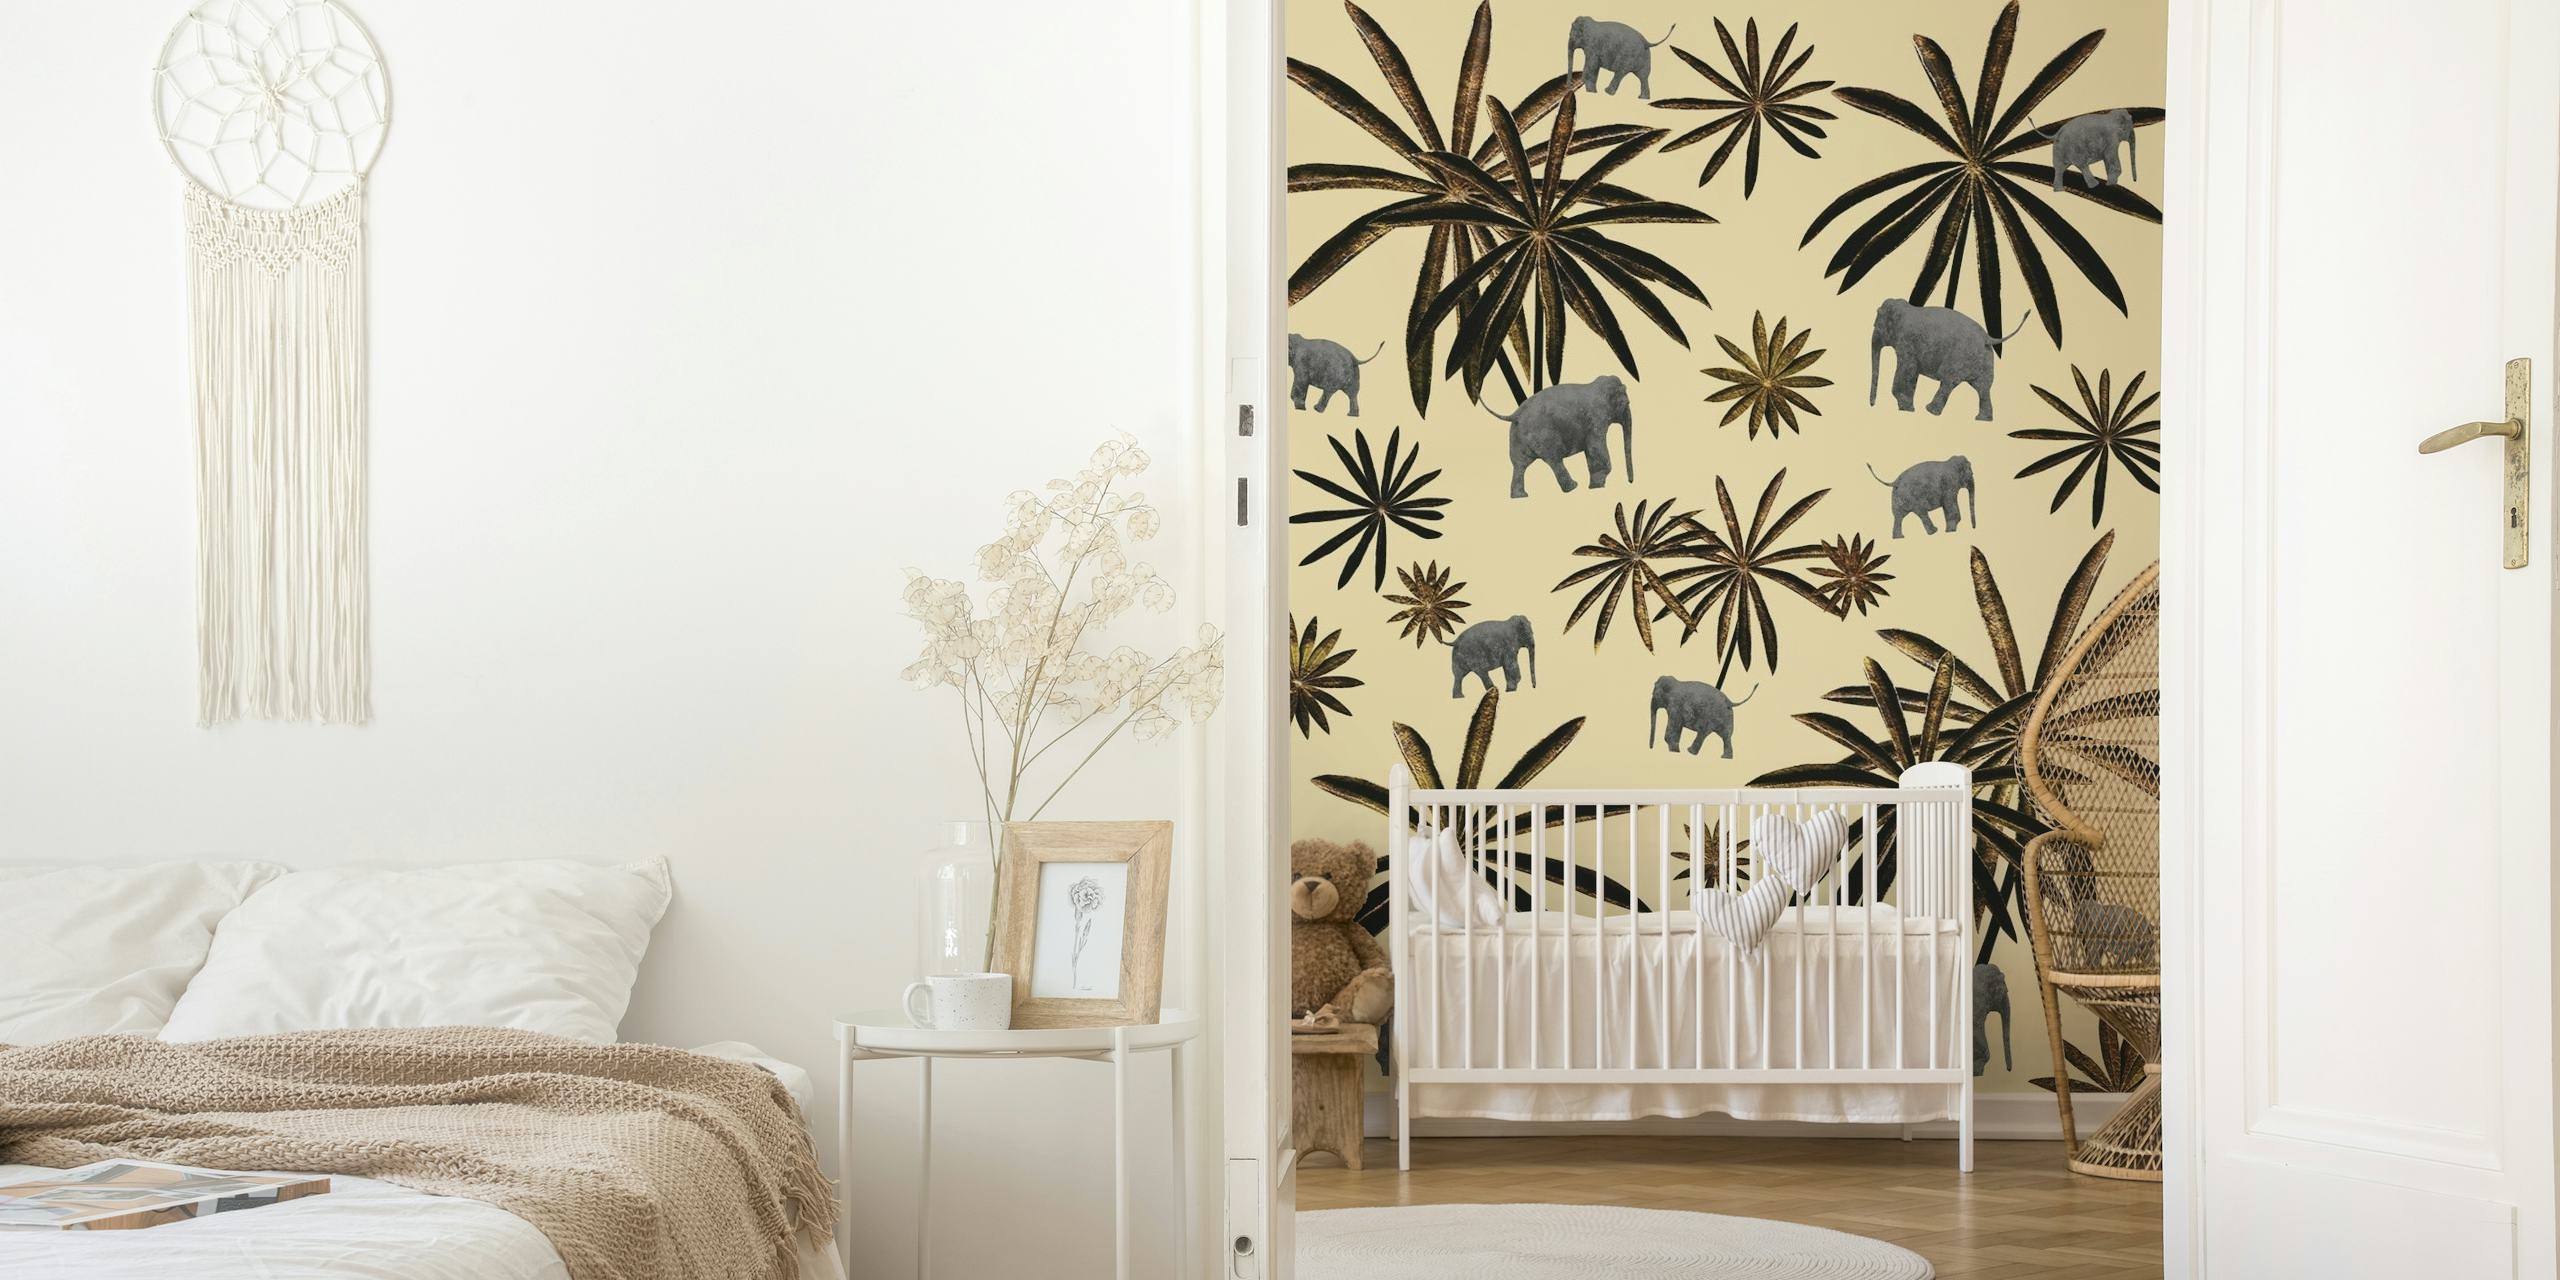 Illustratief fotobehang met olifanten en palmbomen in aardetinten op een neutrale achtergrond